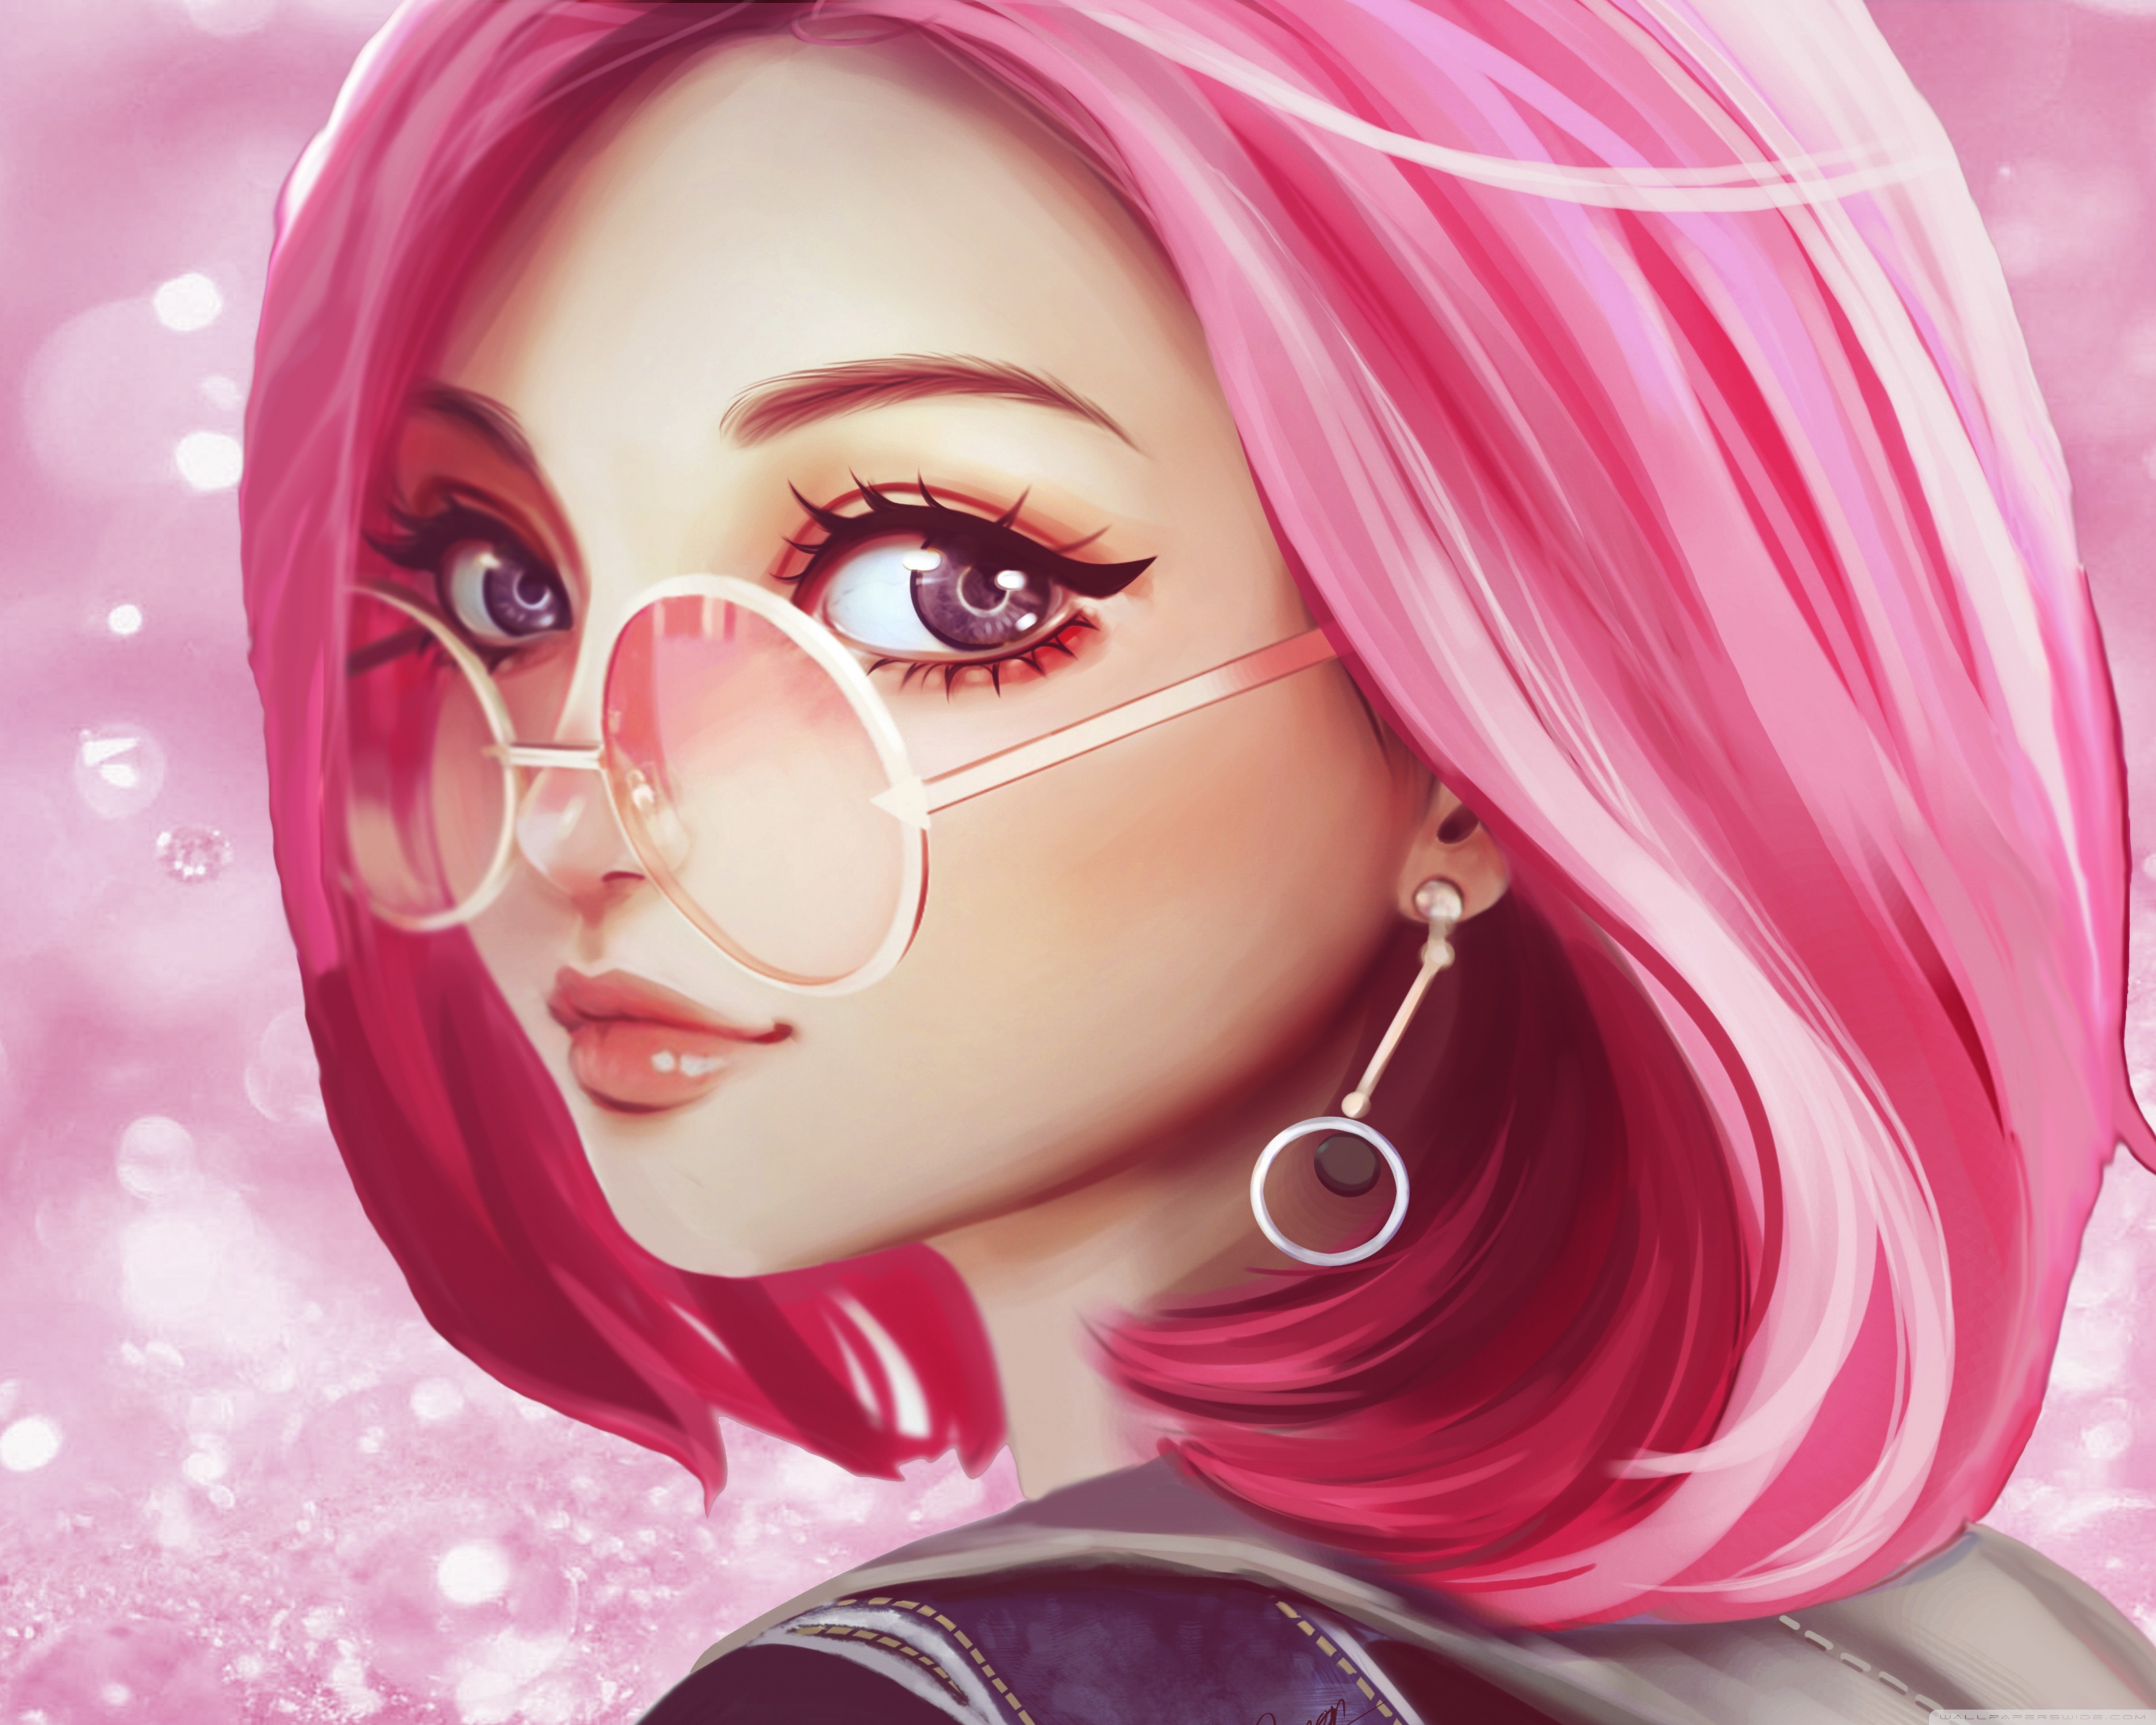 Cute Girl Pink Hair Sunglasses Digital Art Drawing Ultra HD